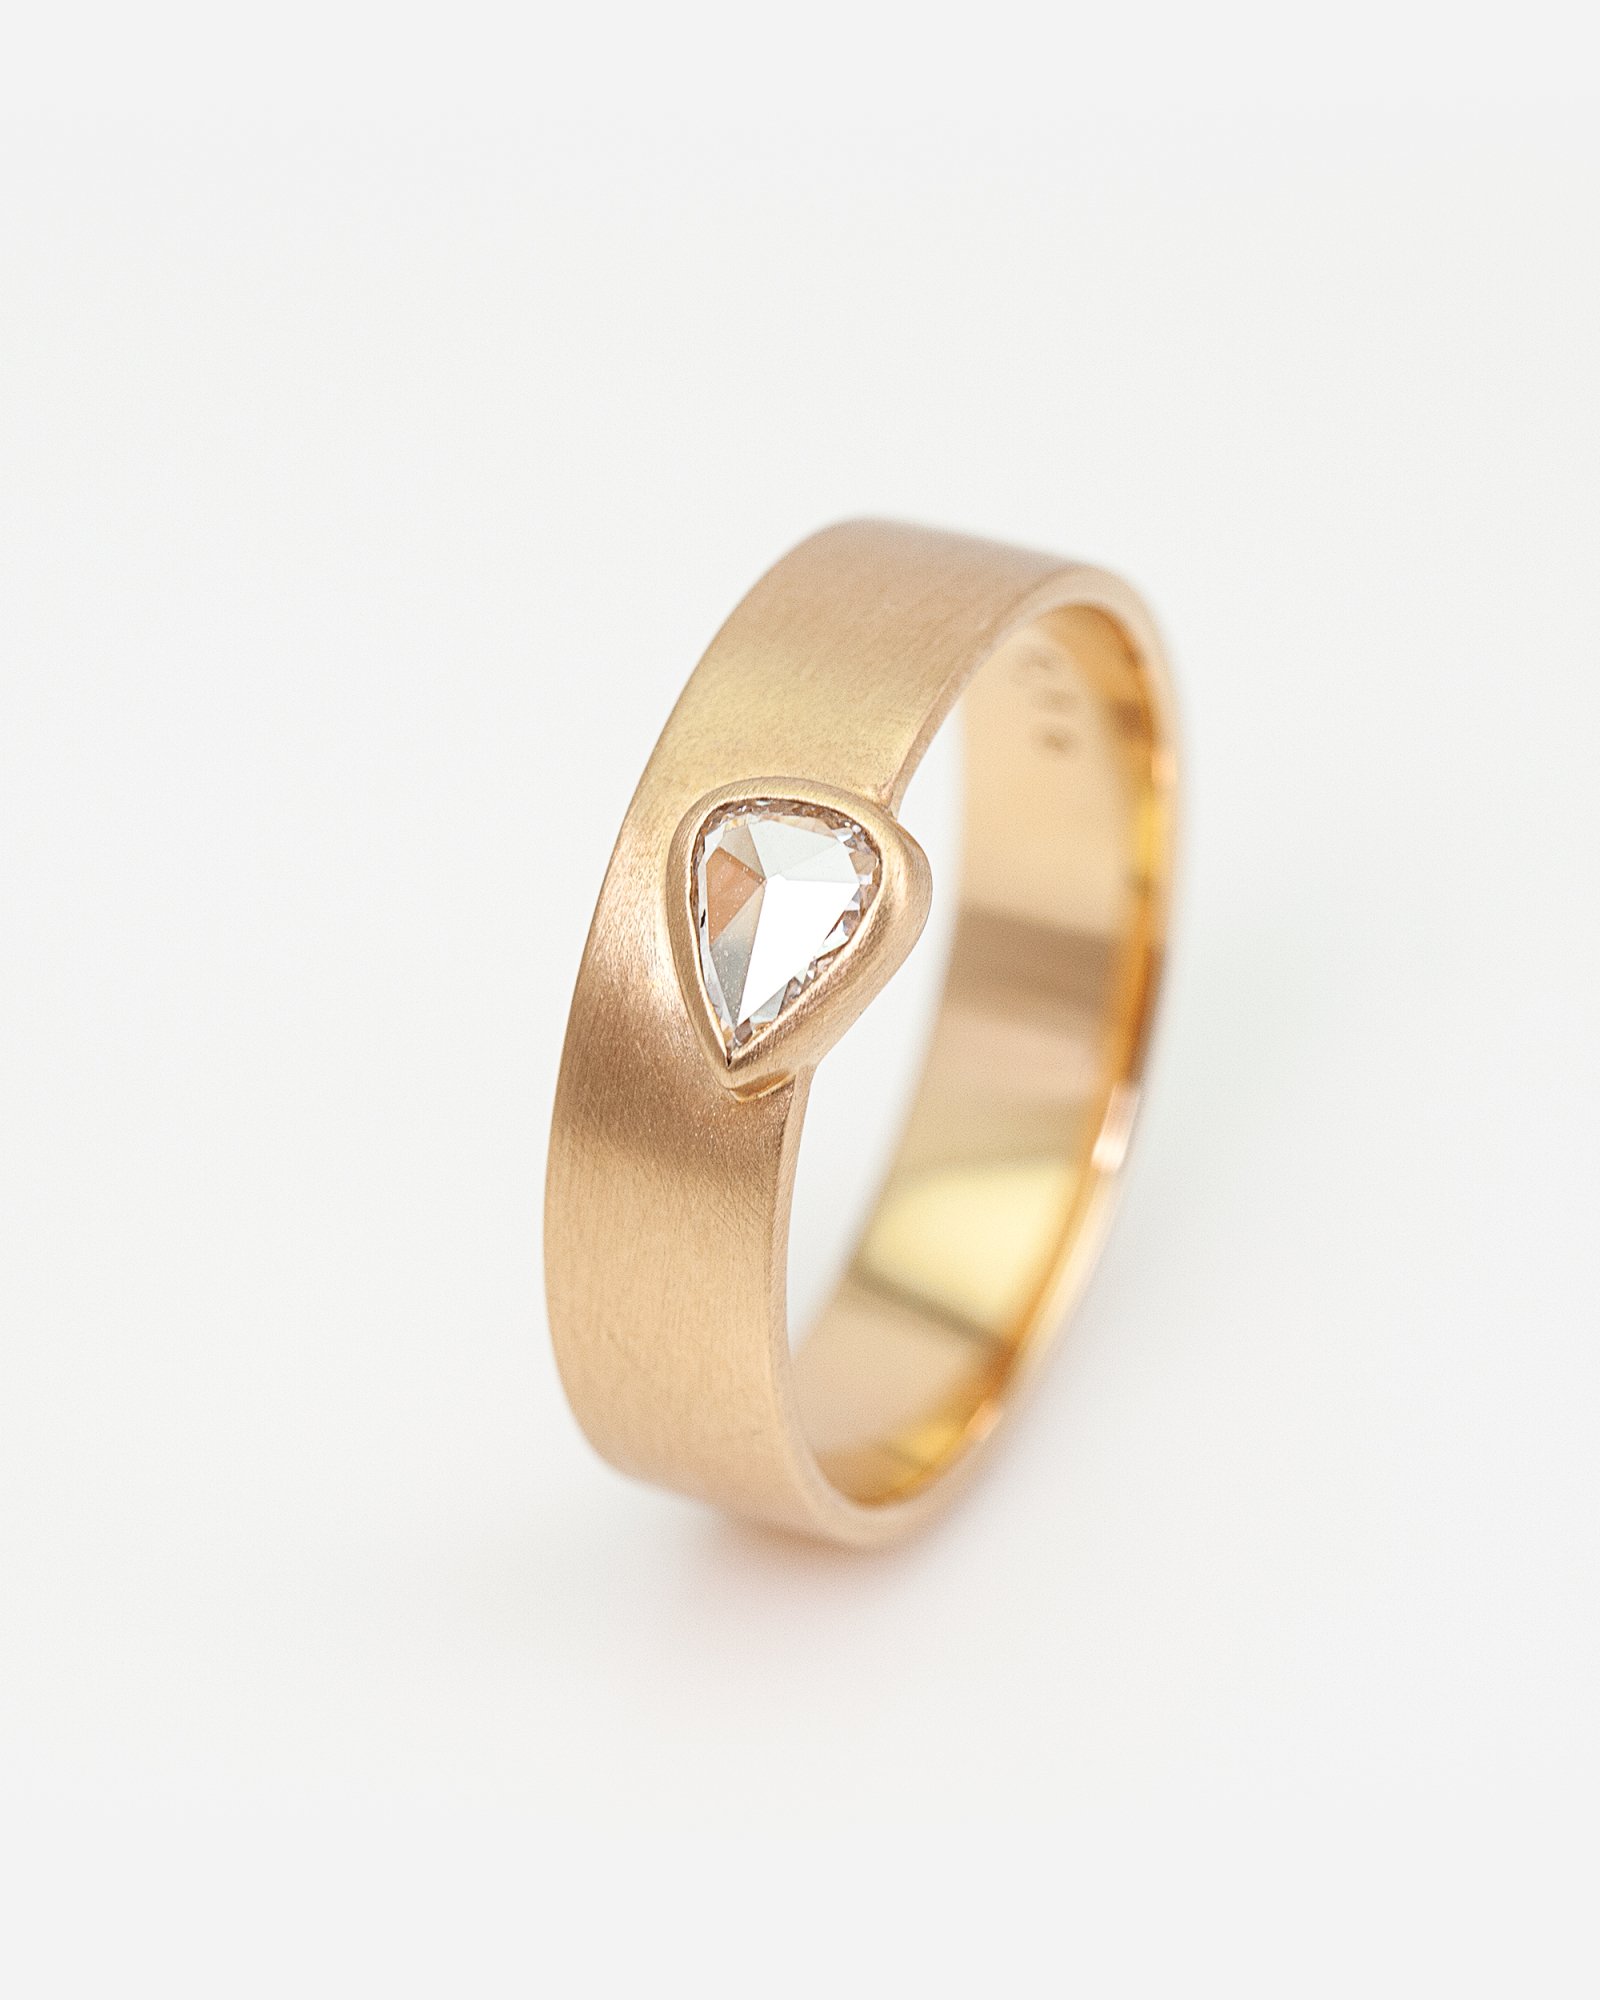 K18 Sunrise Ring / Pair Shape Diamond